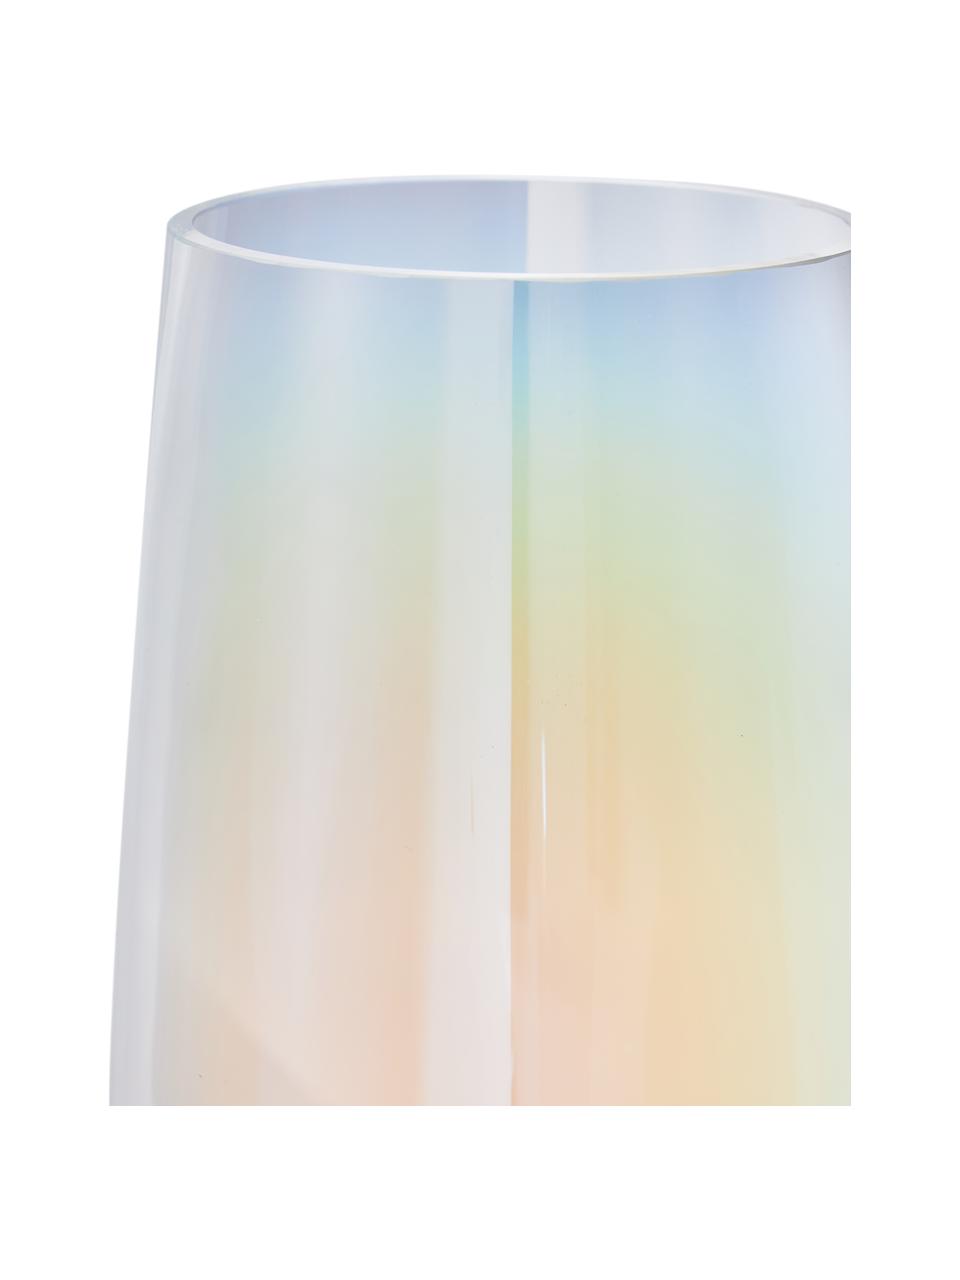 Mundgeblasene Glas-Vase Myla, irisierend, Glas, Transparent, mehrfarbig-irisierend, Ø 14 x H 28 cm